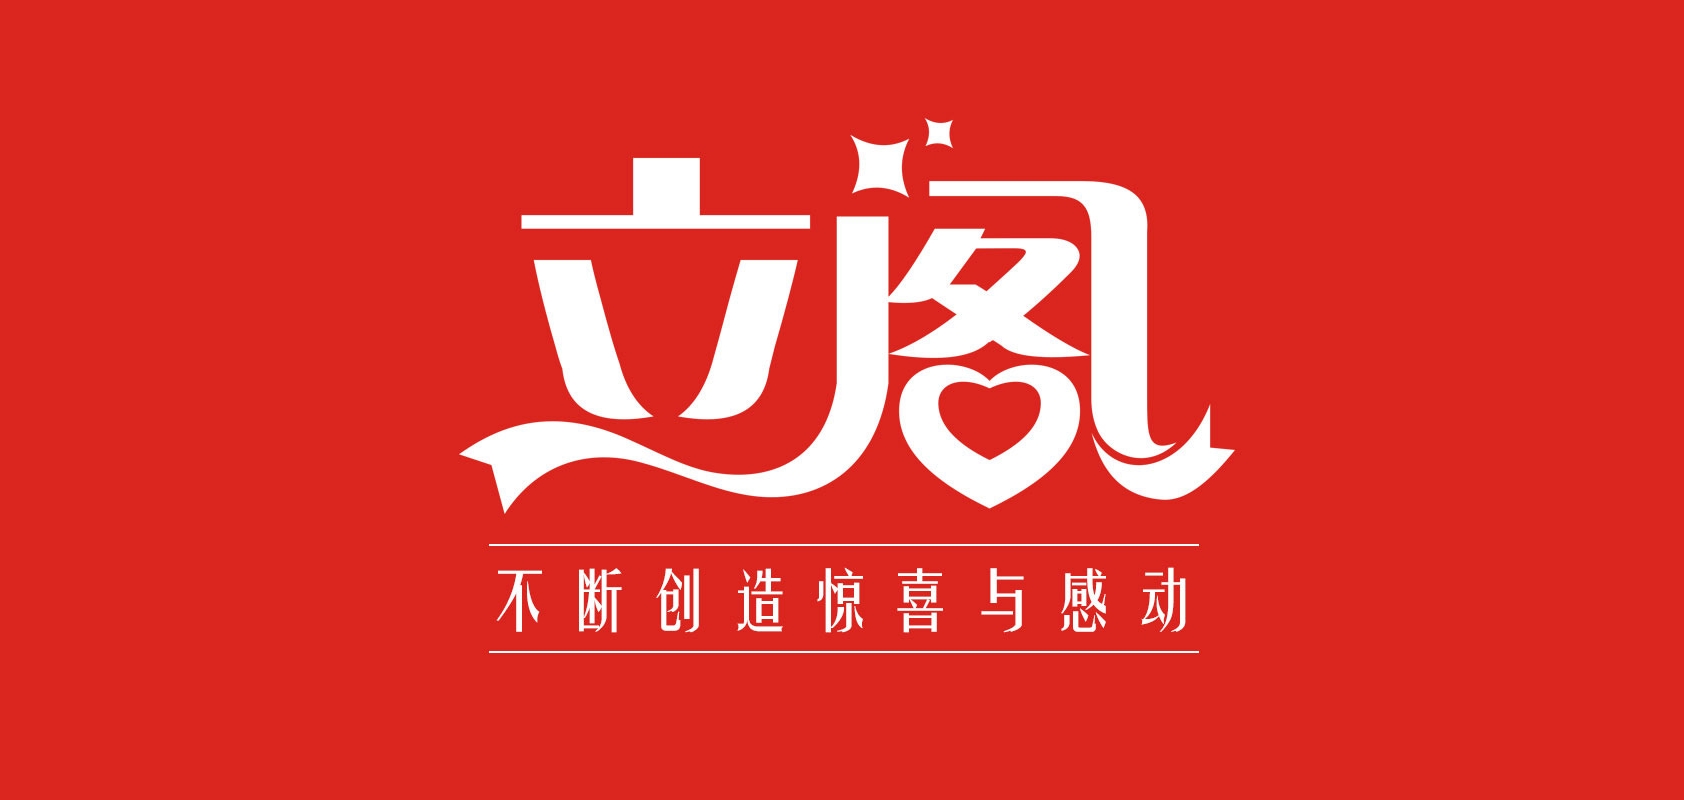 立阁品牌logo